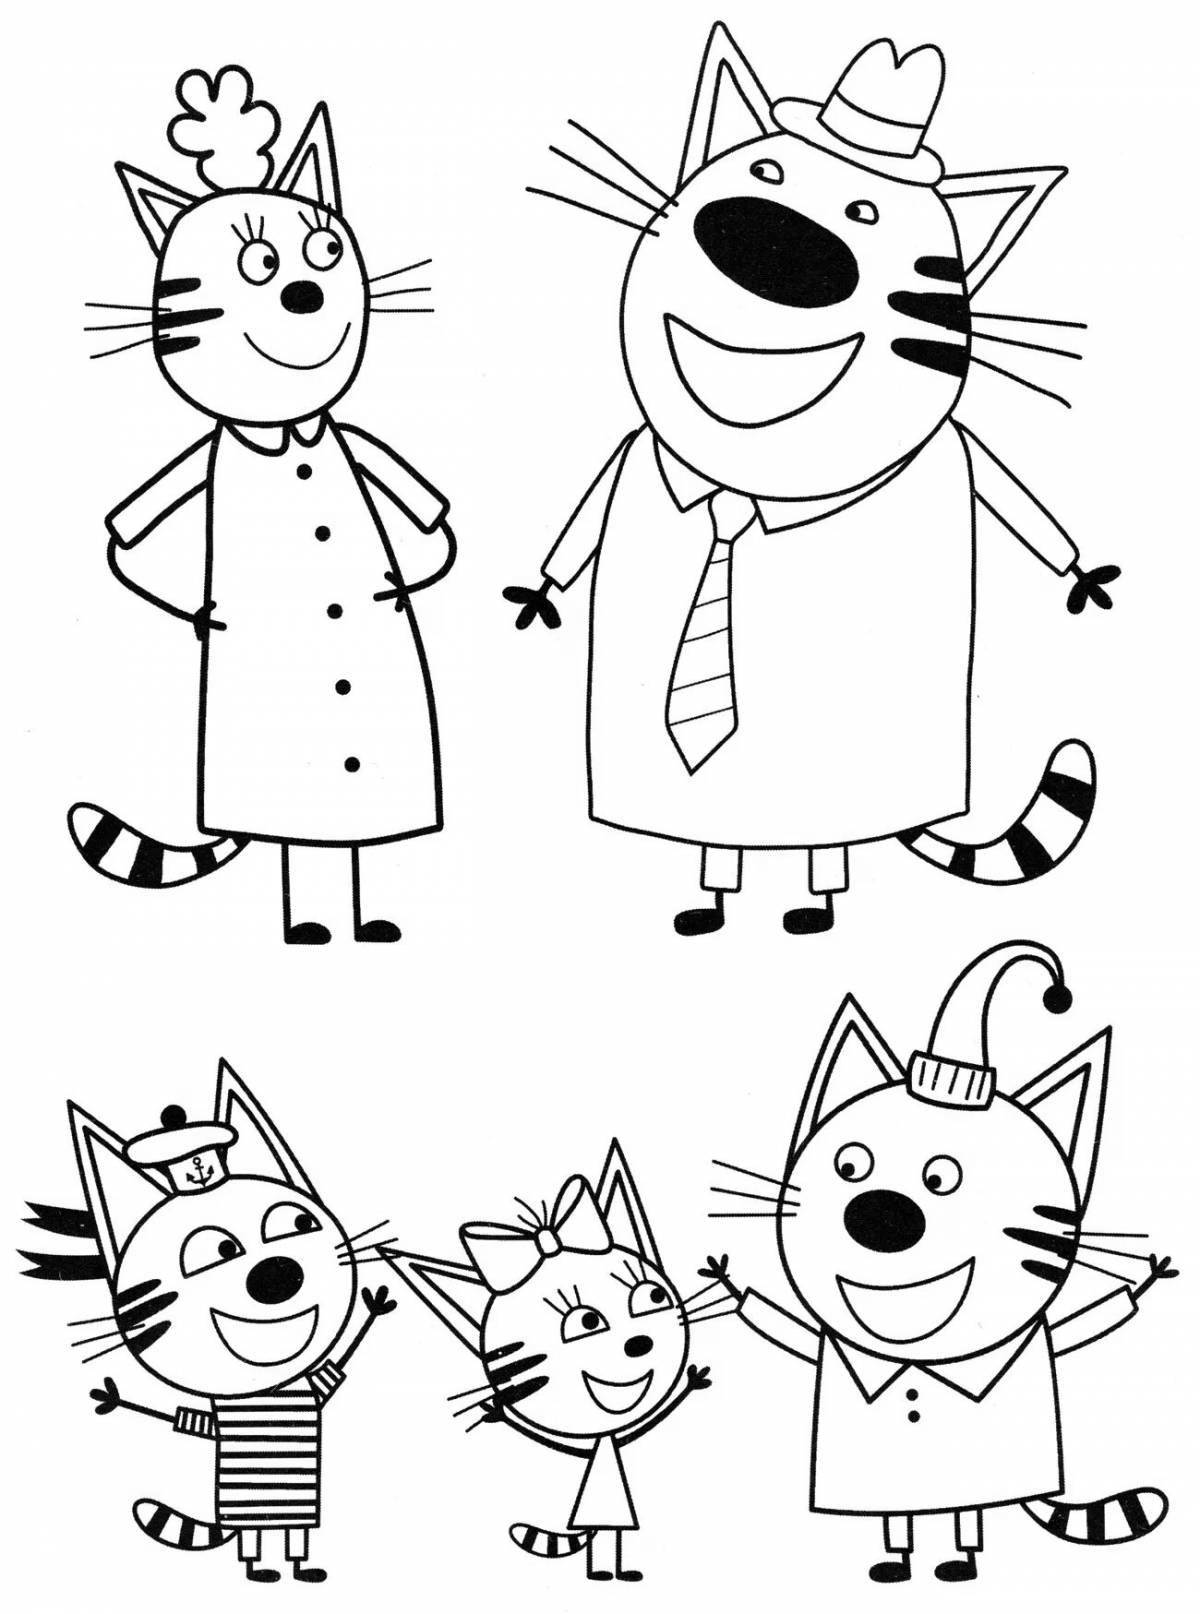 Улыбающийся мультфильм «три кота»